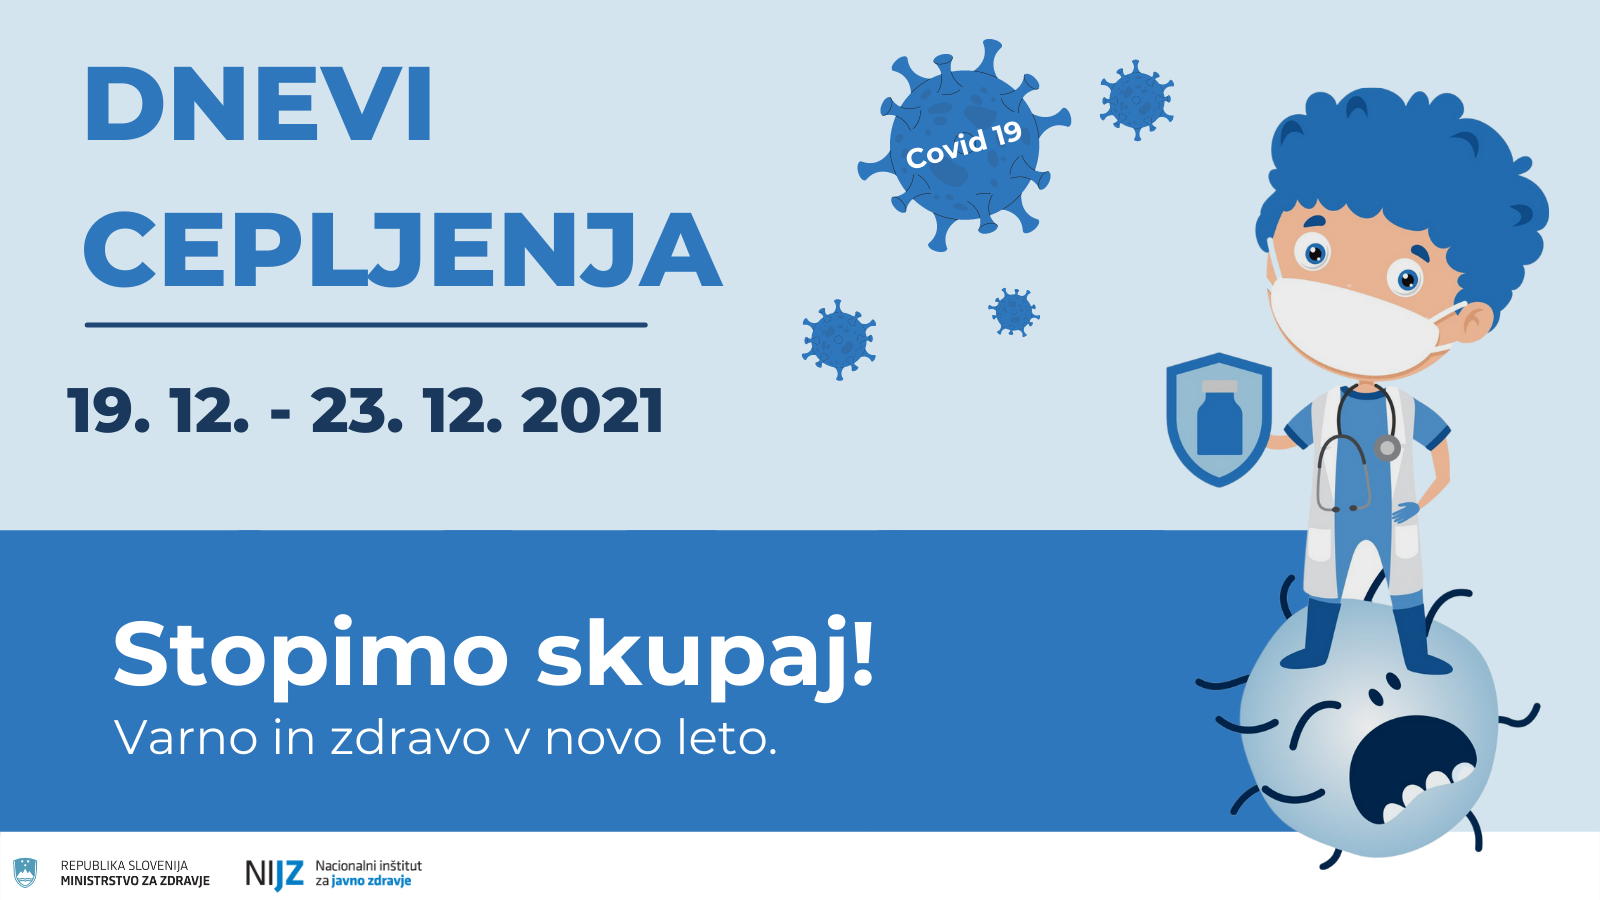 Vabimo vas na slovenske dneve cepljenja, ki bodo potekali v občinah v Sloveniji od 19. do 23. decembra 2021.